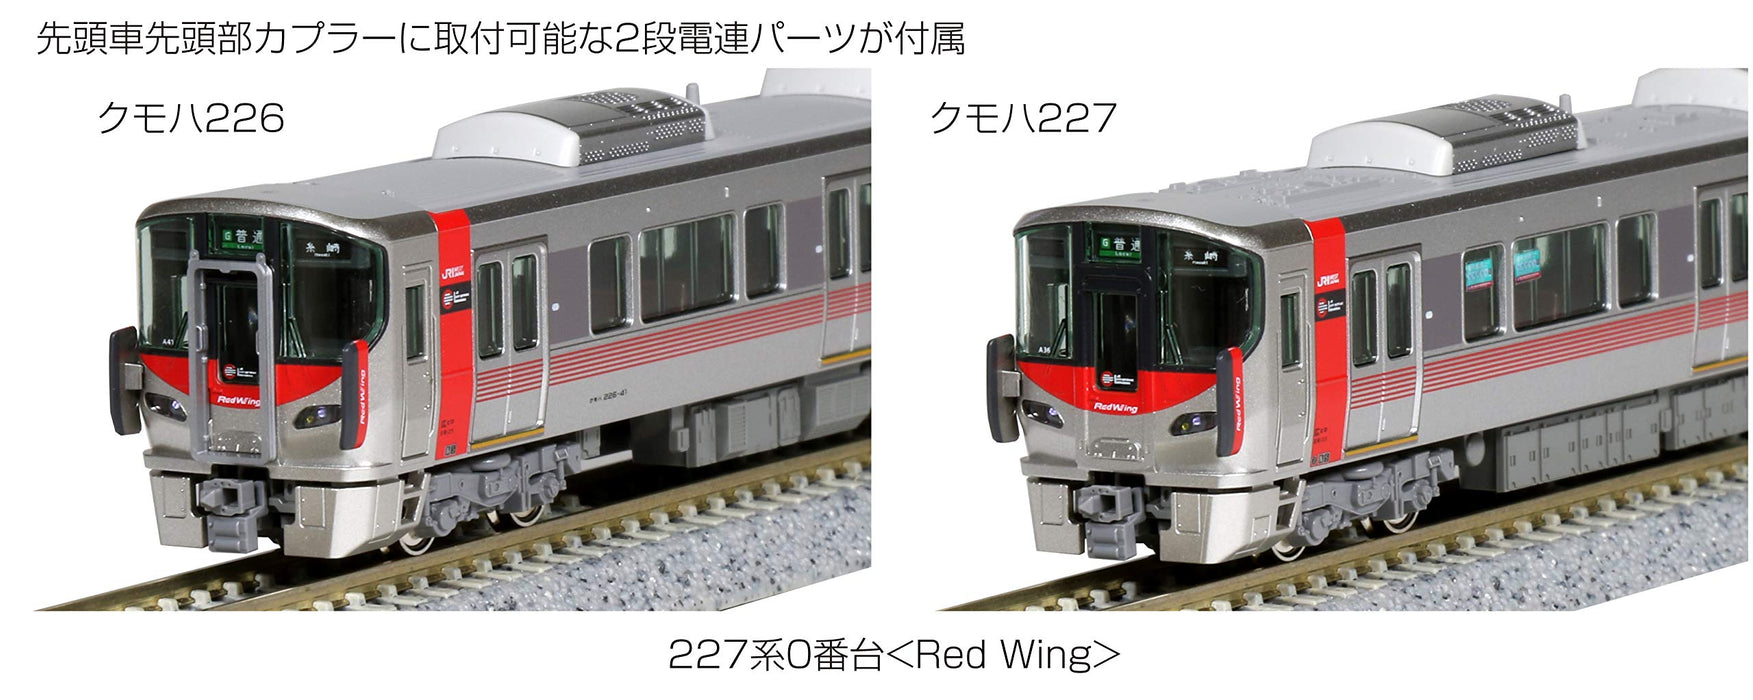 Kato Spur N 6-Wagen-Set 227 Serie 0 Red Wing 10-1629 Eisenbahnzugmodell